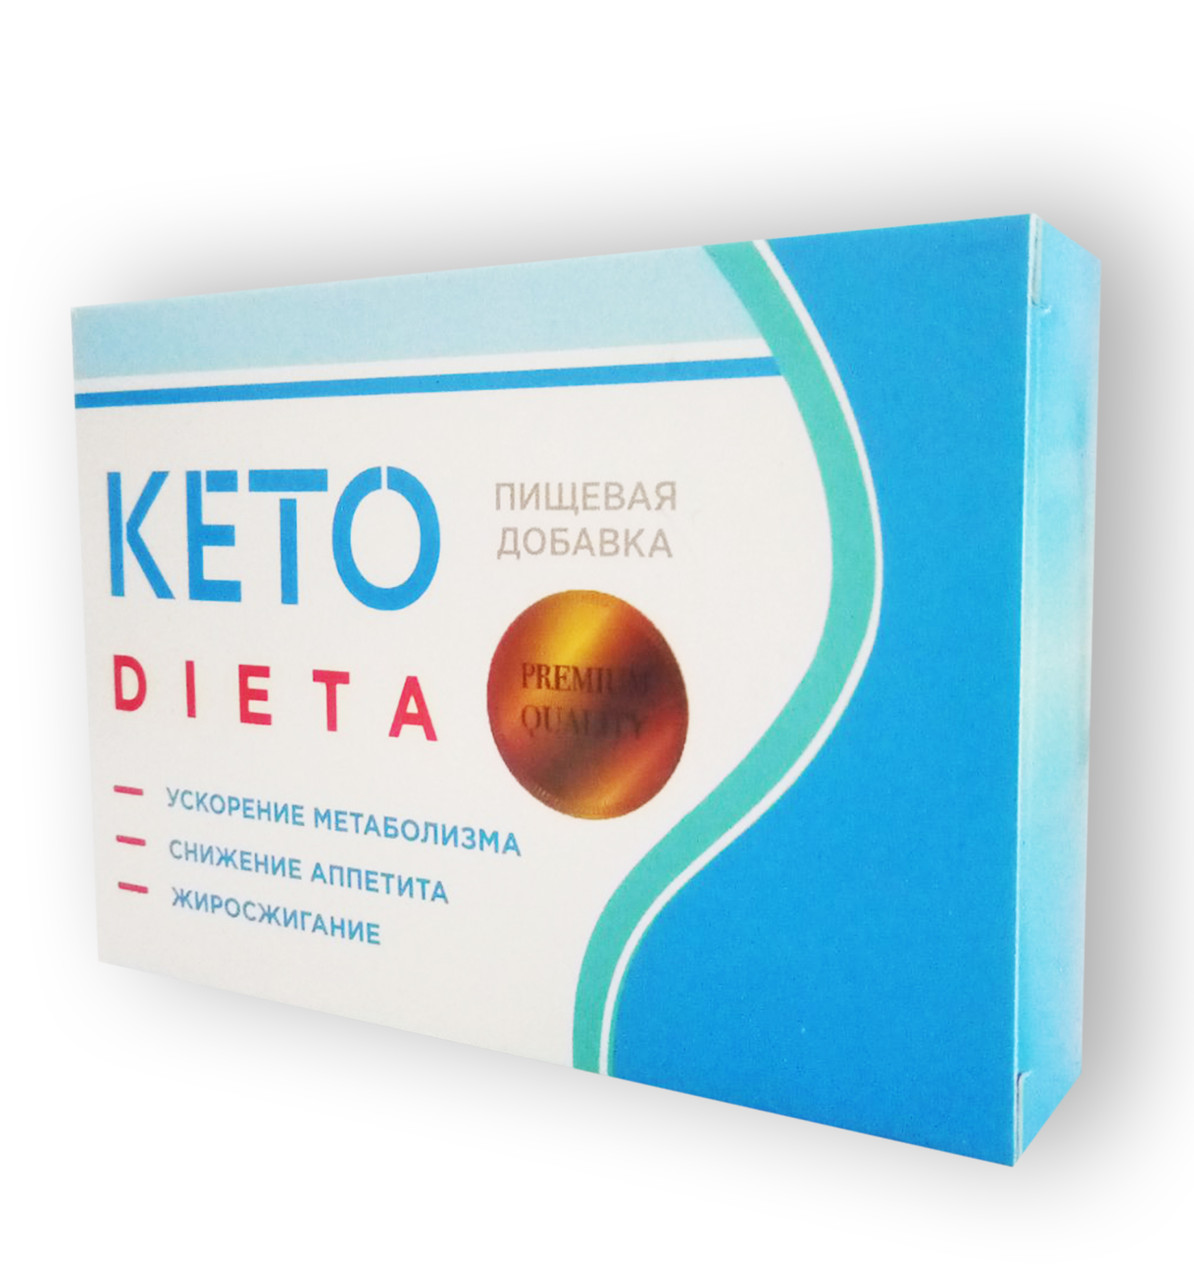 Keto Dieta — Капсули для схуднення (Кето Дієта)